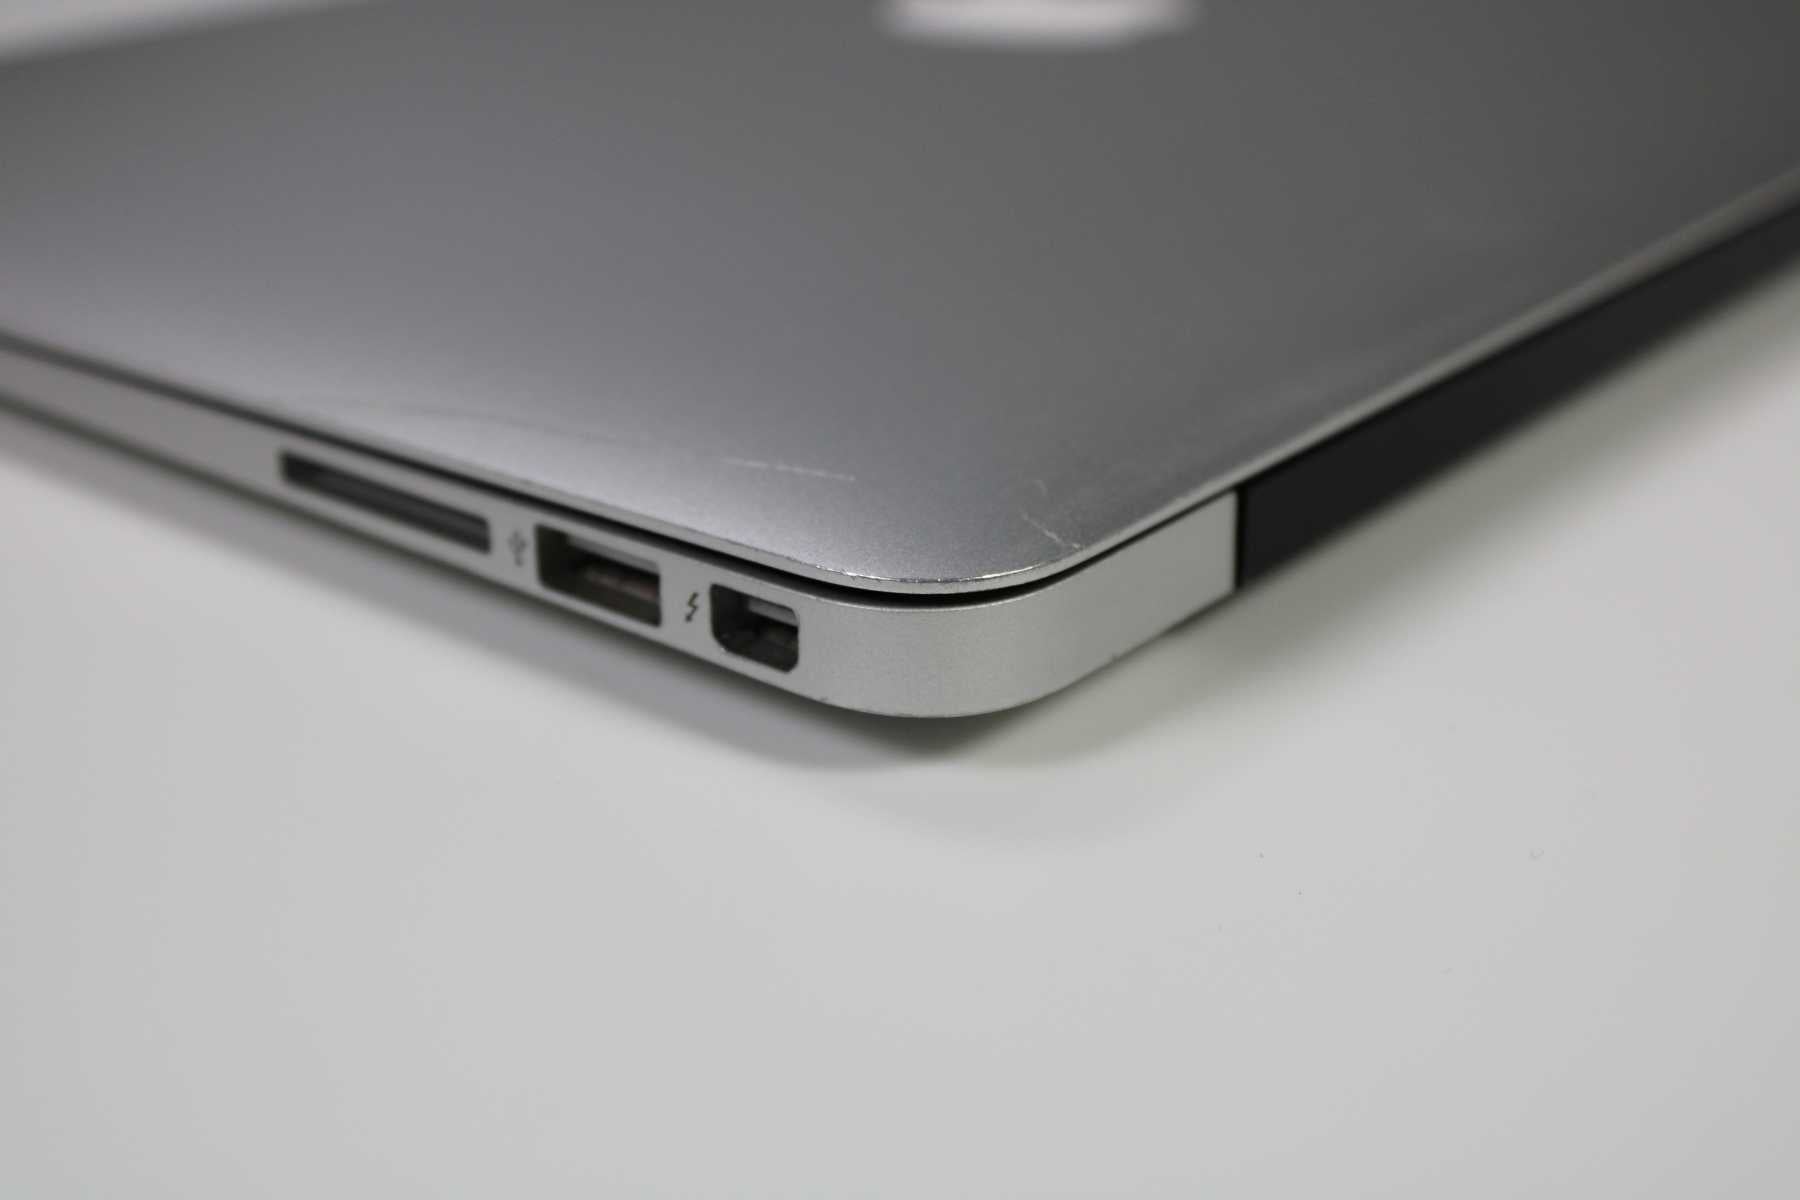 MacBook Air 2015 